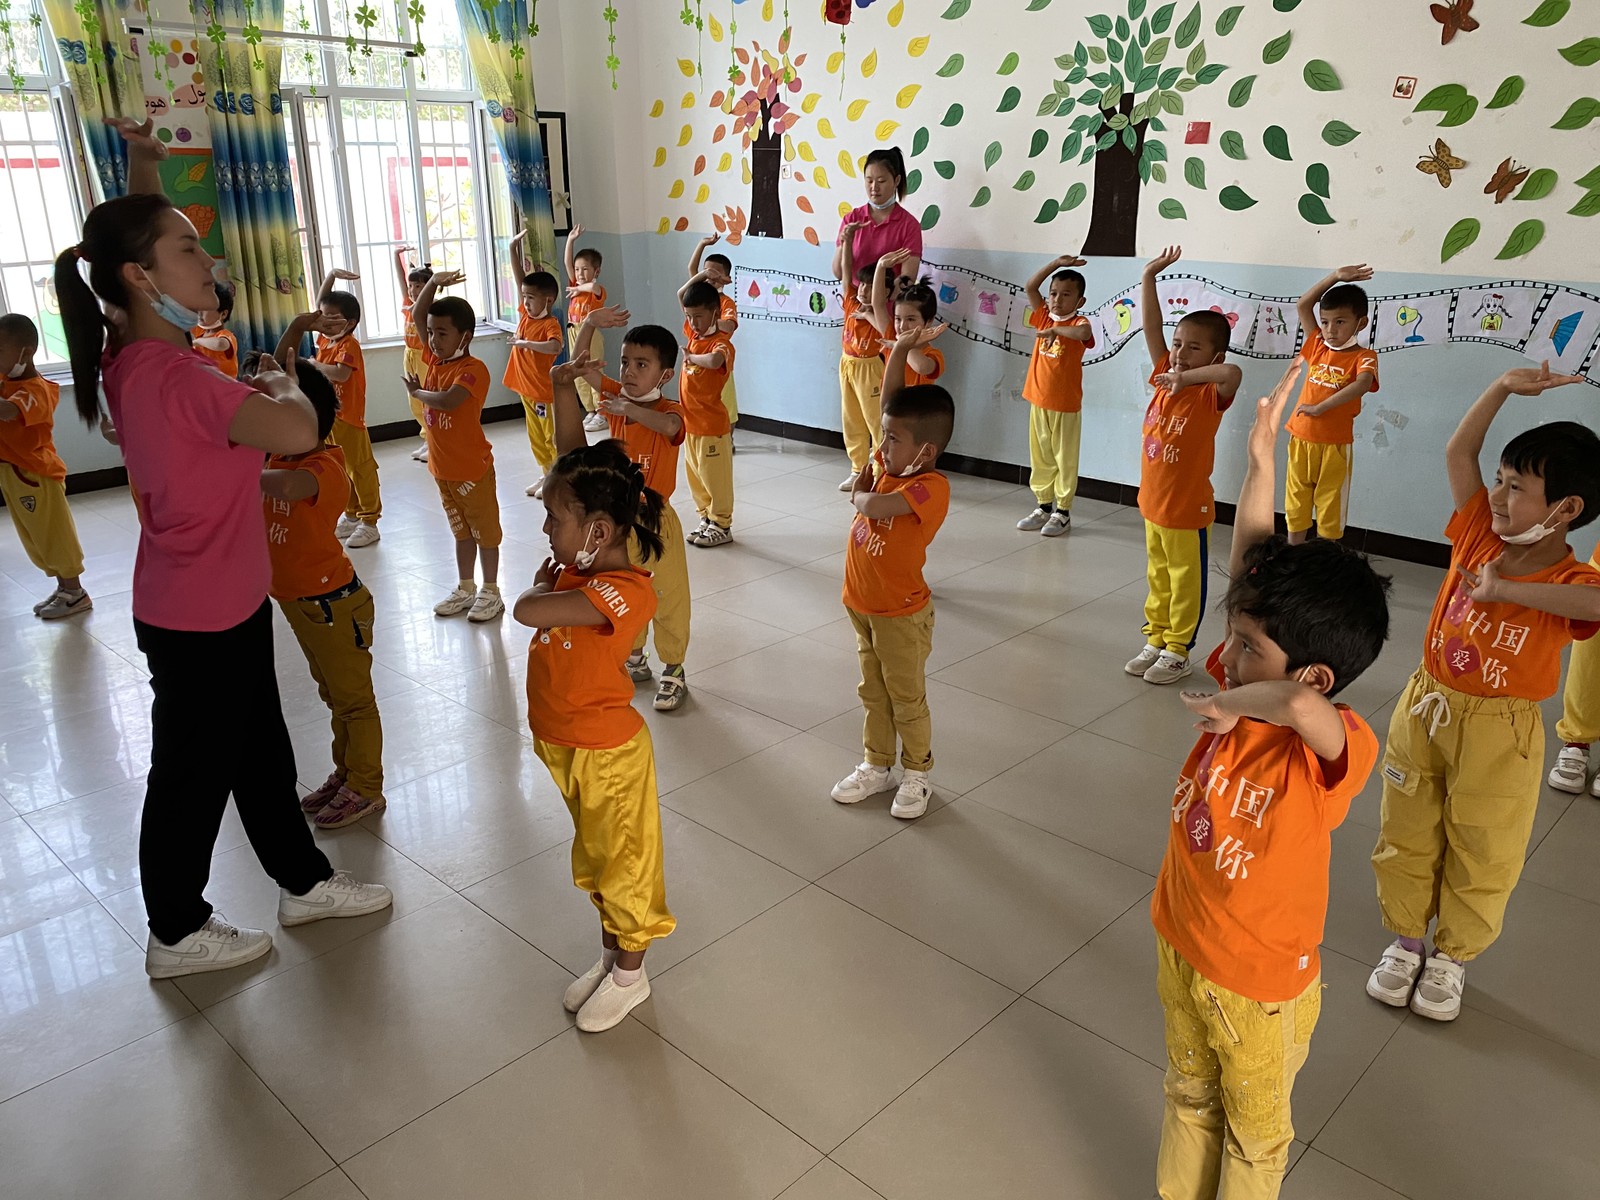 Crianças uigures são mostradas como exemplo de harmonia étnica em escolas-modelo. Nas camisetas, a frase "Eu amo a China"Agência O Globo